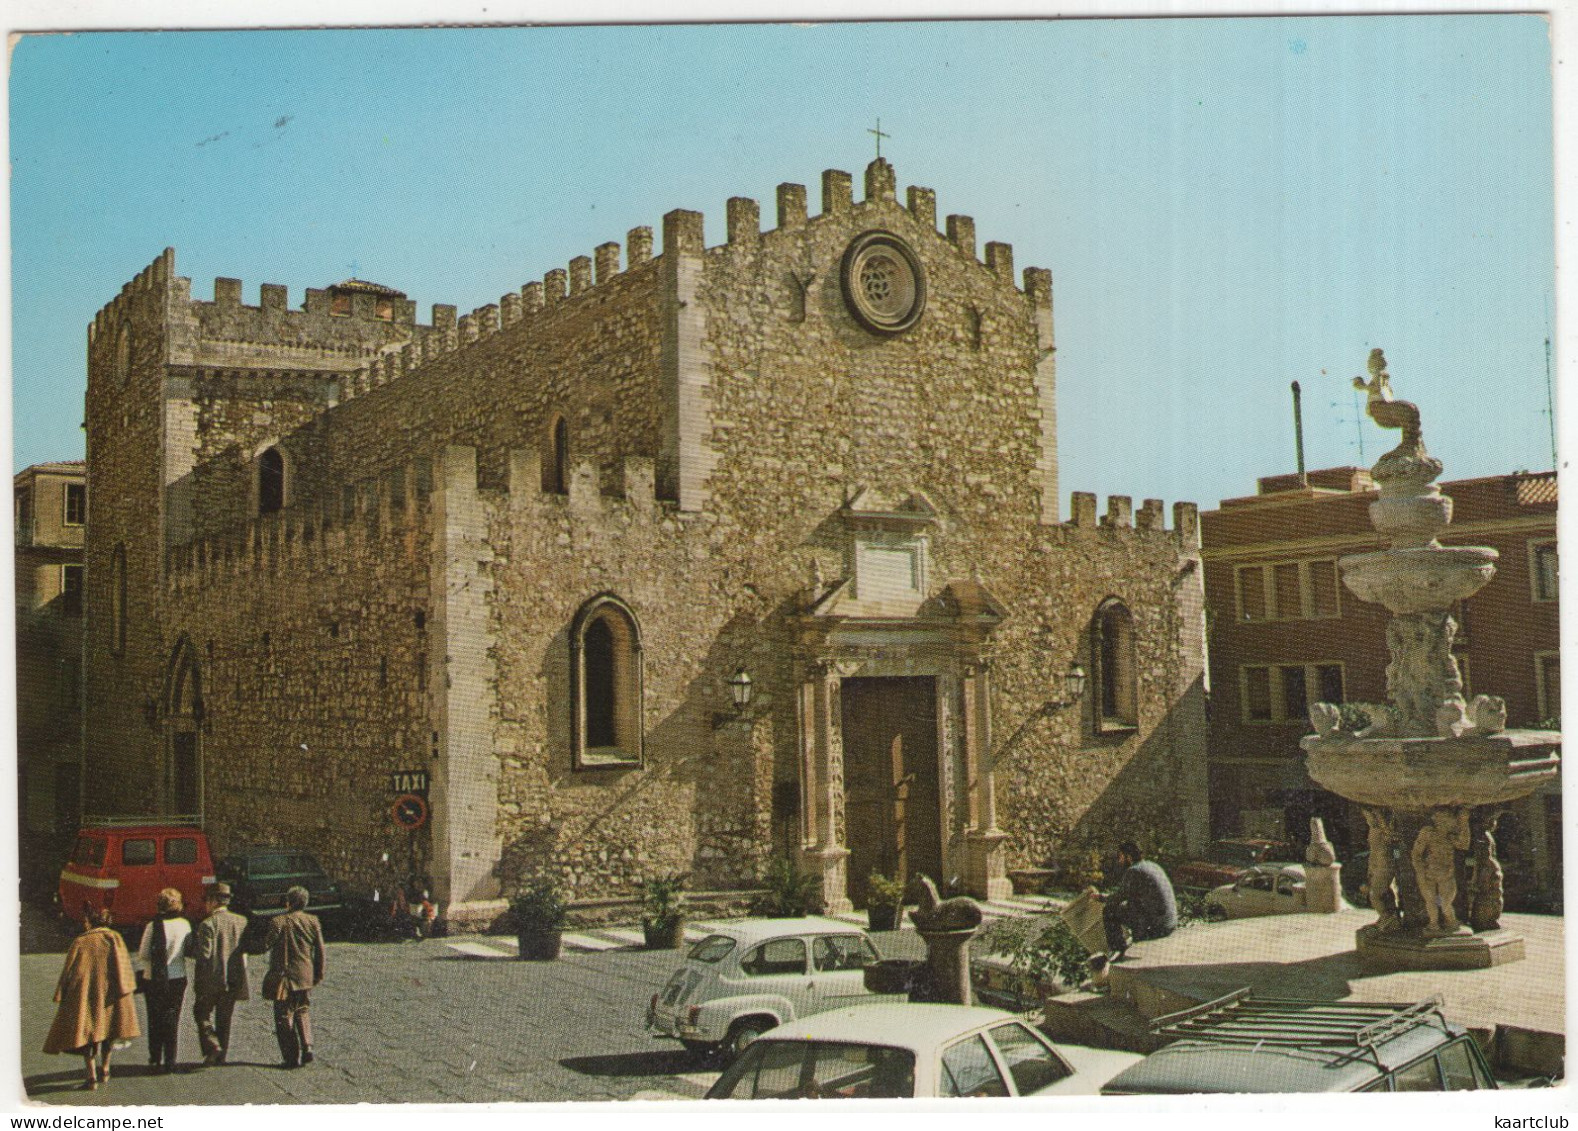 Taormina: FIAT 600, 500, 238 - TAXI-STAND - Il Duomo - (Italia) - Voitures De Tourisme